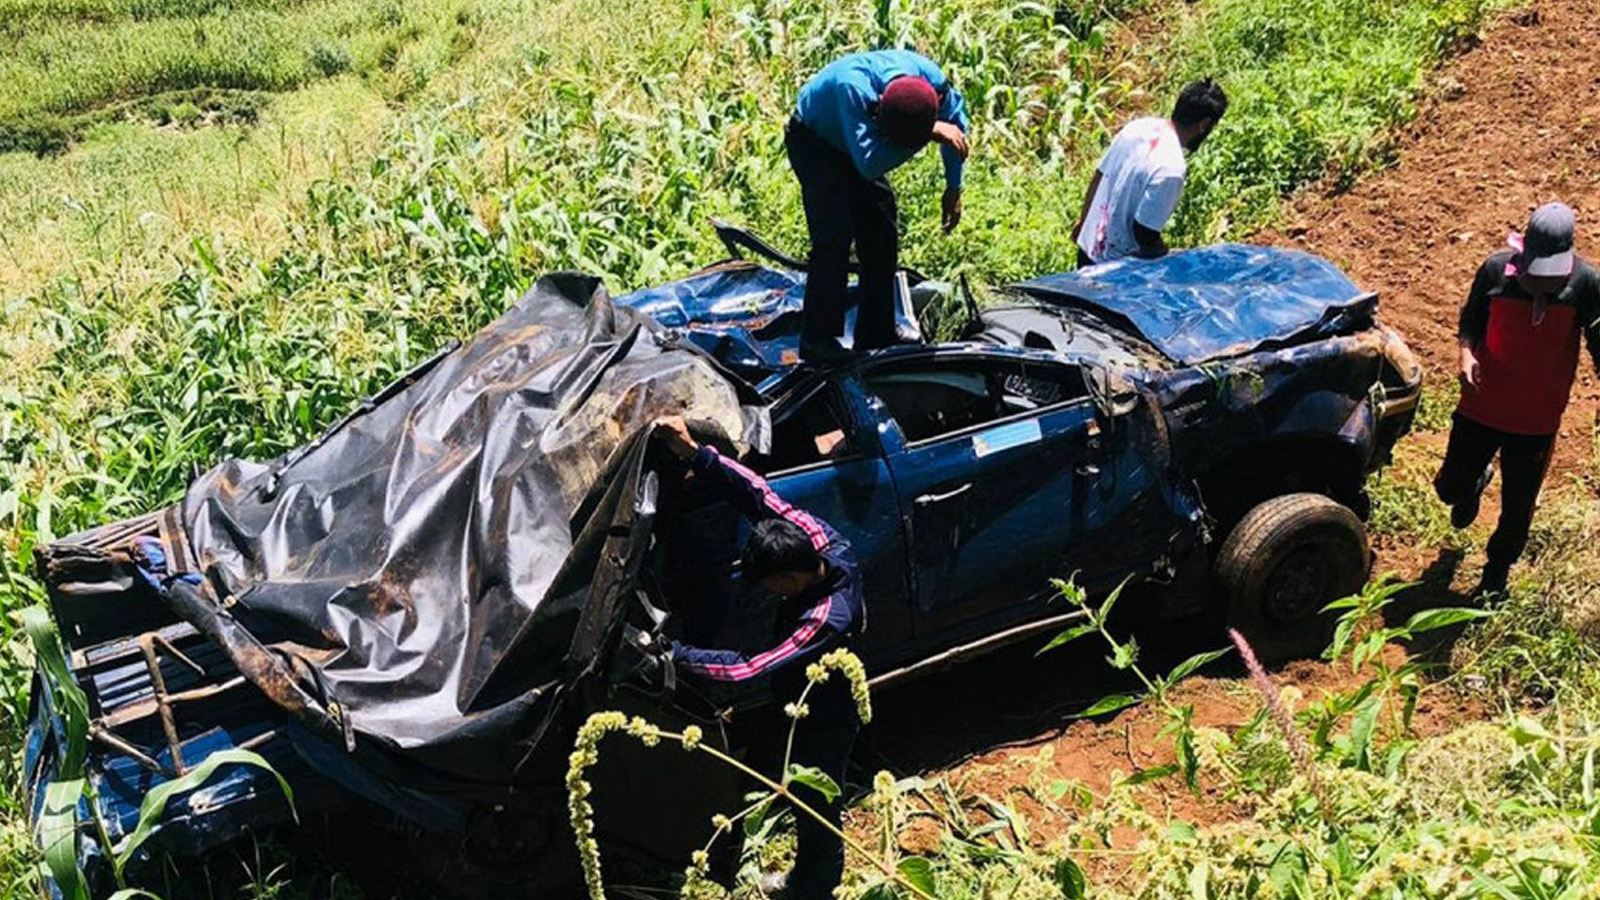 रुकुम पुर्वमा प्रहरीको गाडी दुर्घटनाः २ डिएसपीसहित ६ जना घाईते, १ जना गम्भिर